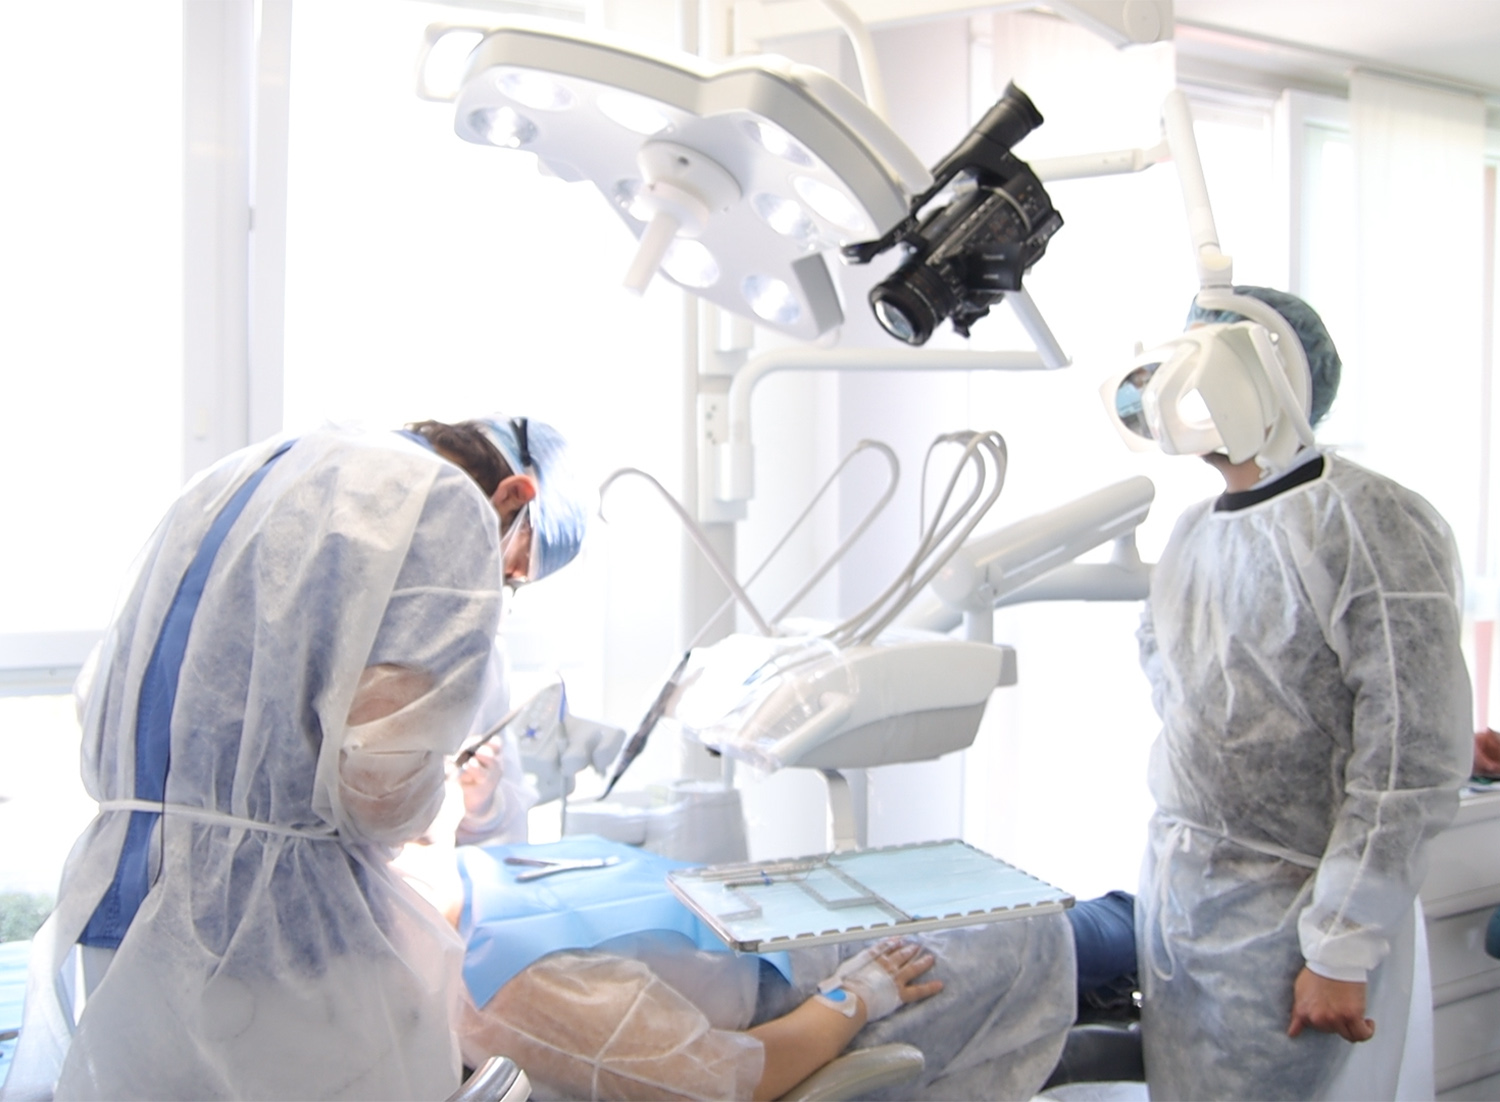 Corso di implantologia base e full arch su paziente